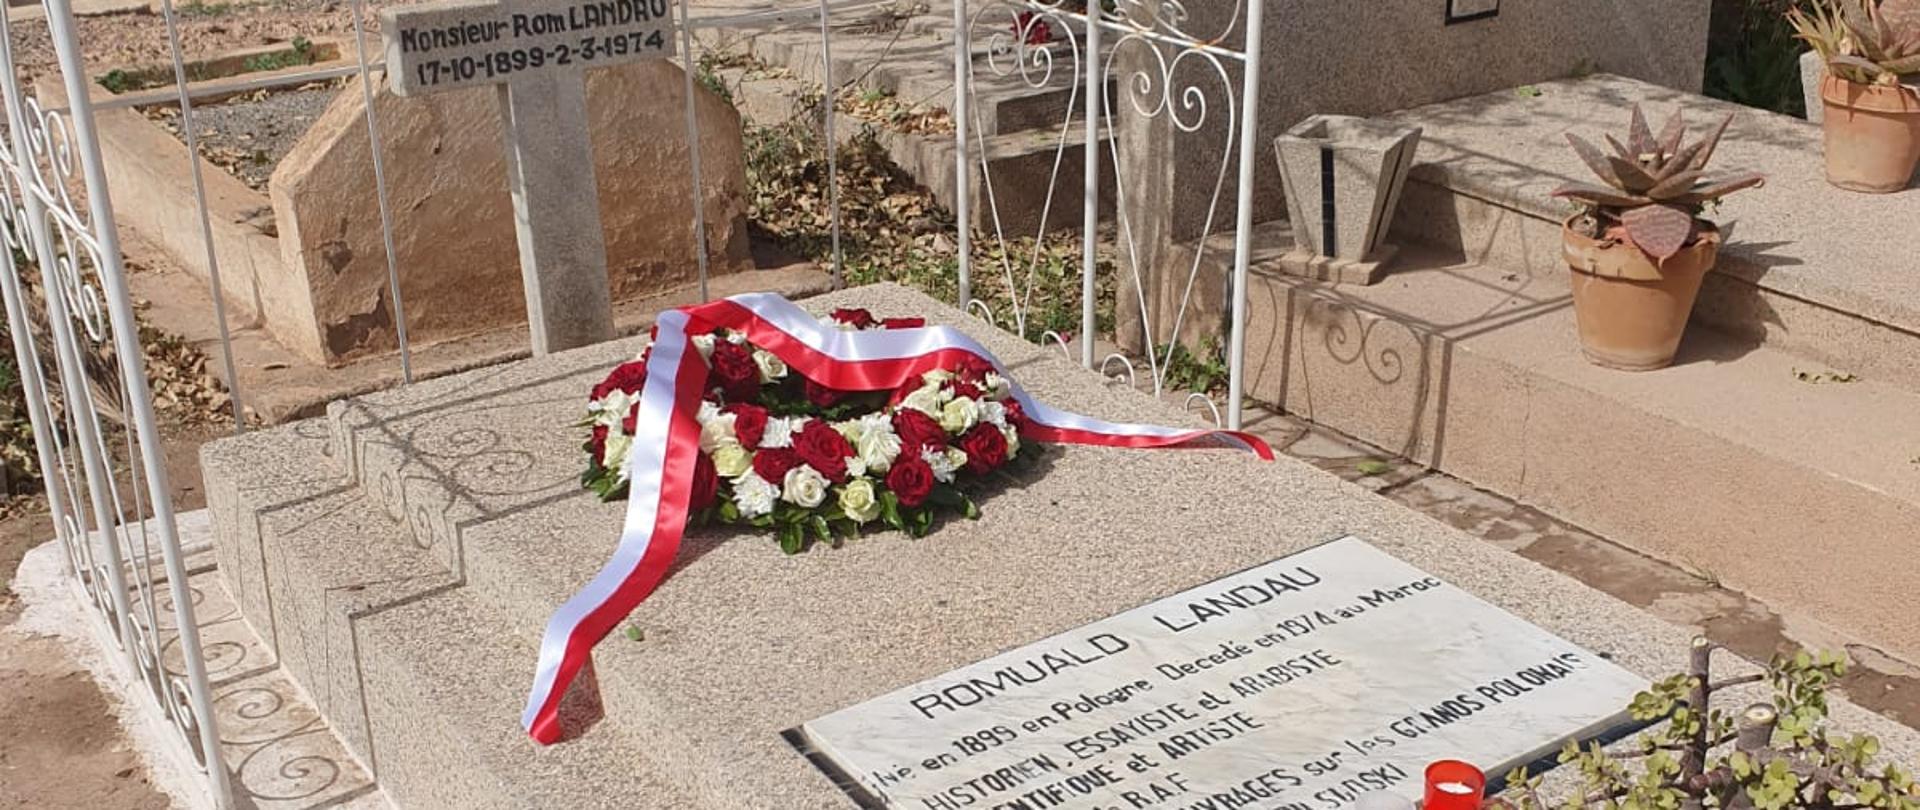 
Grób Roma Landaua na cmentarzu w Marrakeszu
